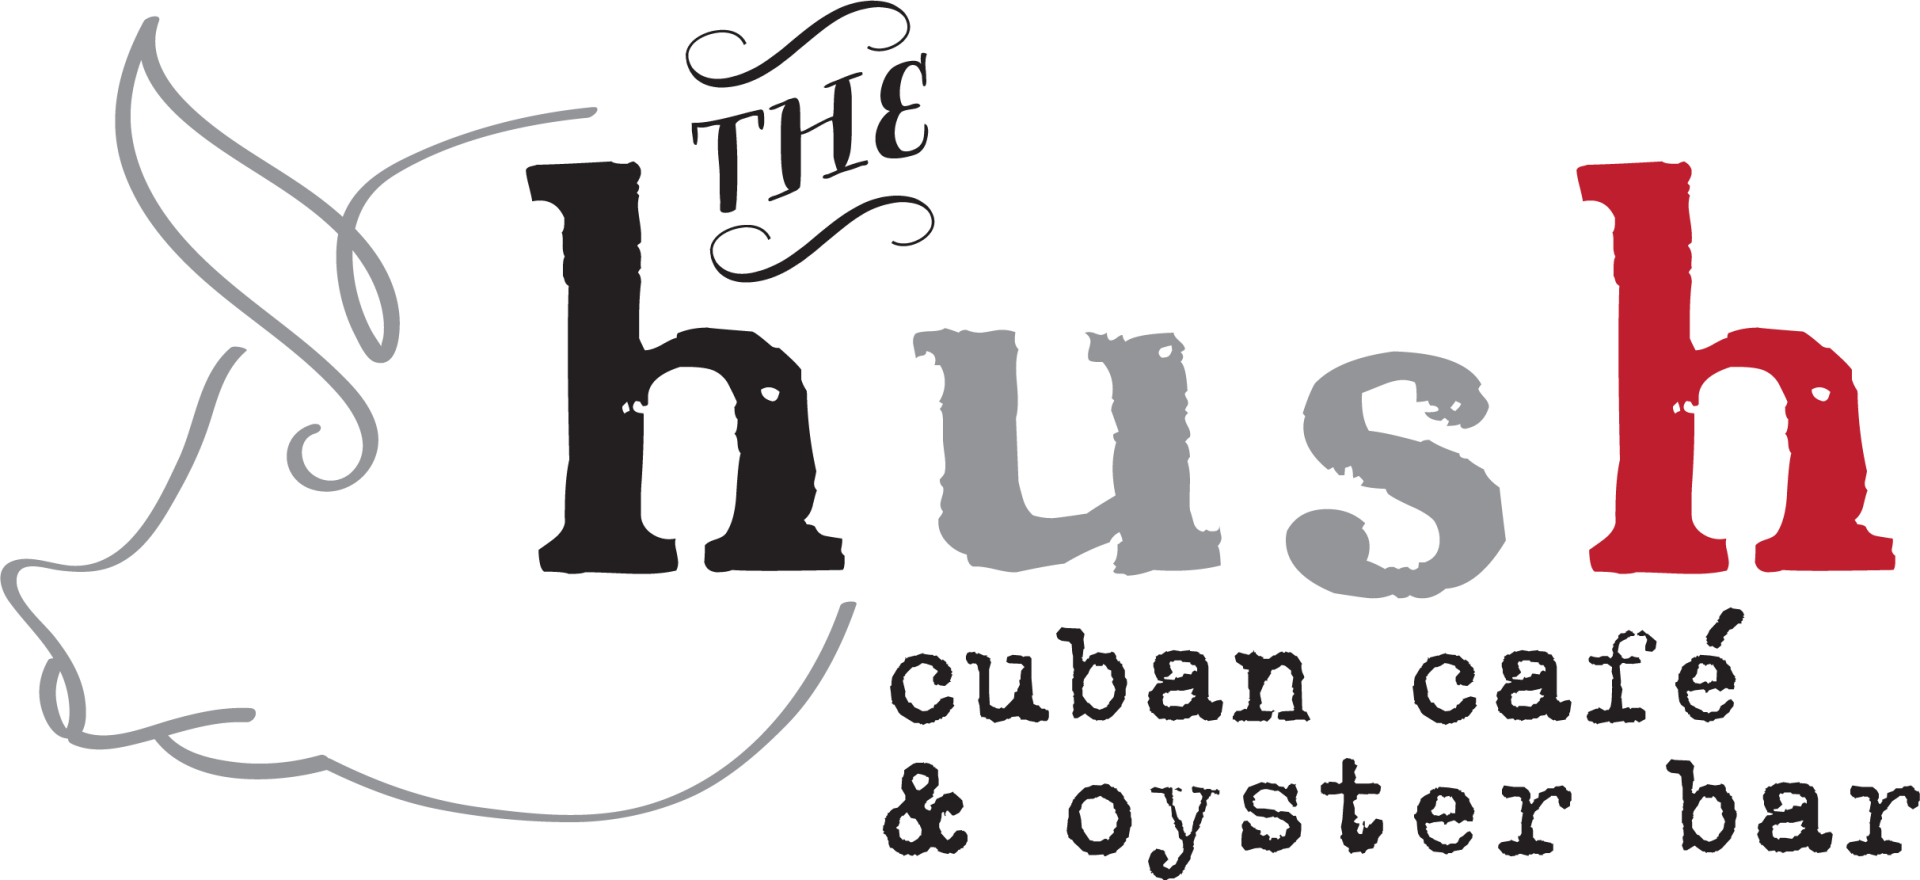 Hush Cuban Cafe & Oyster Bar